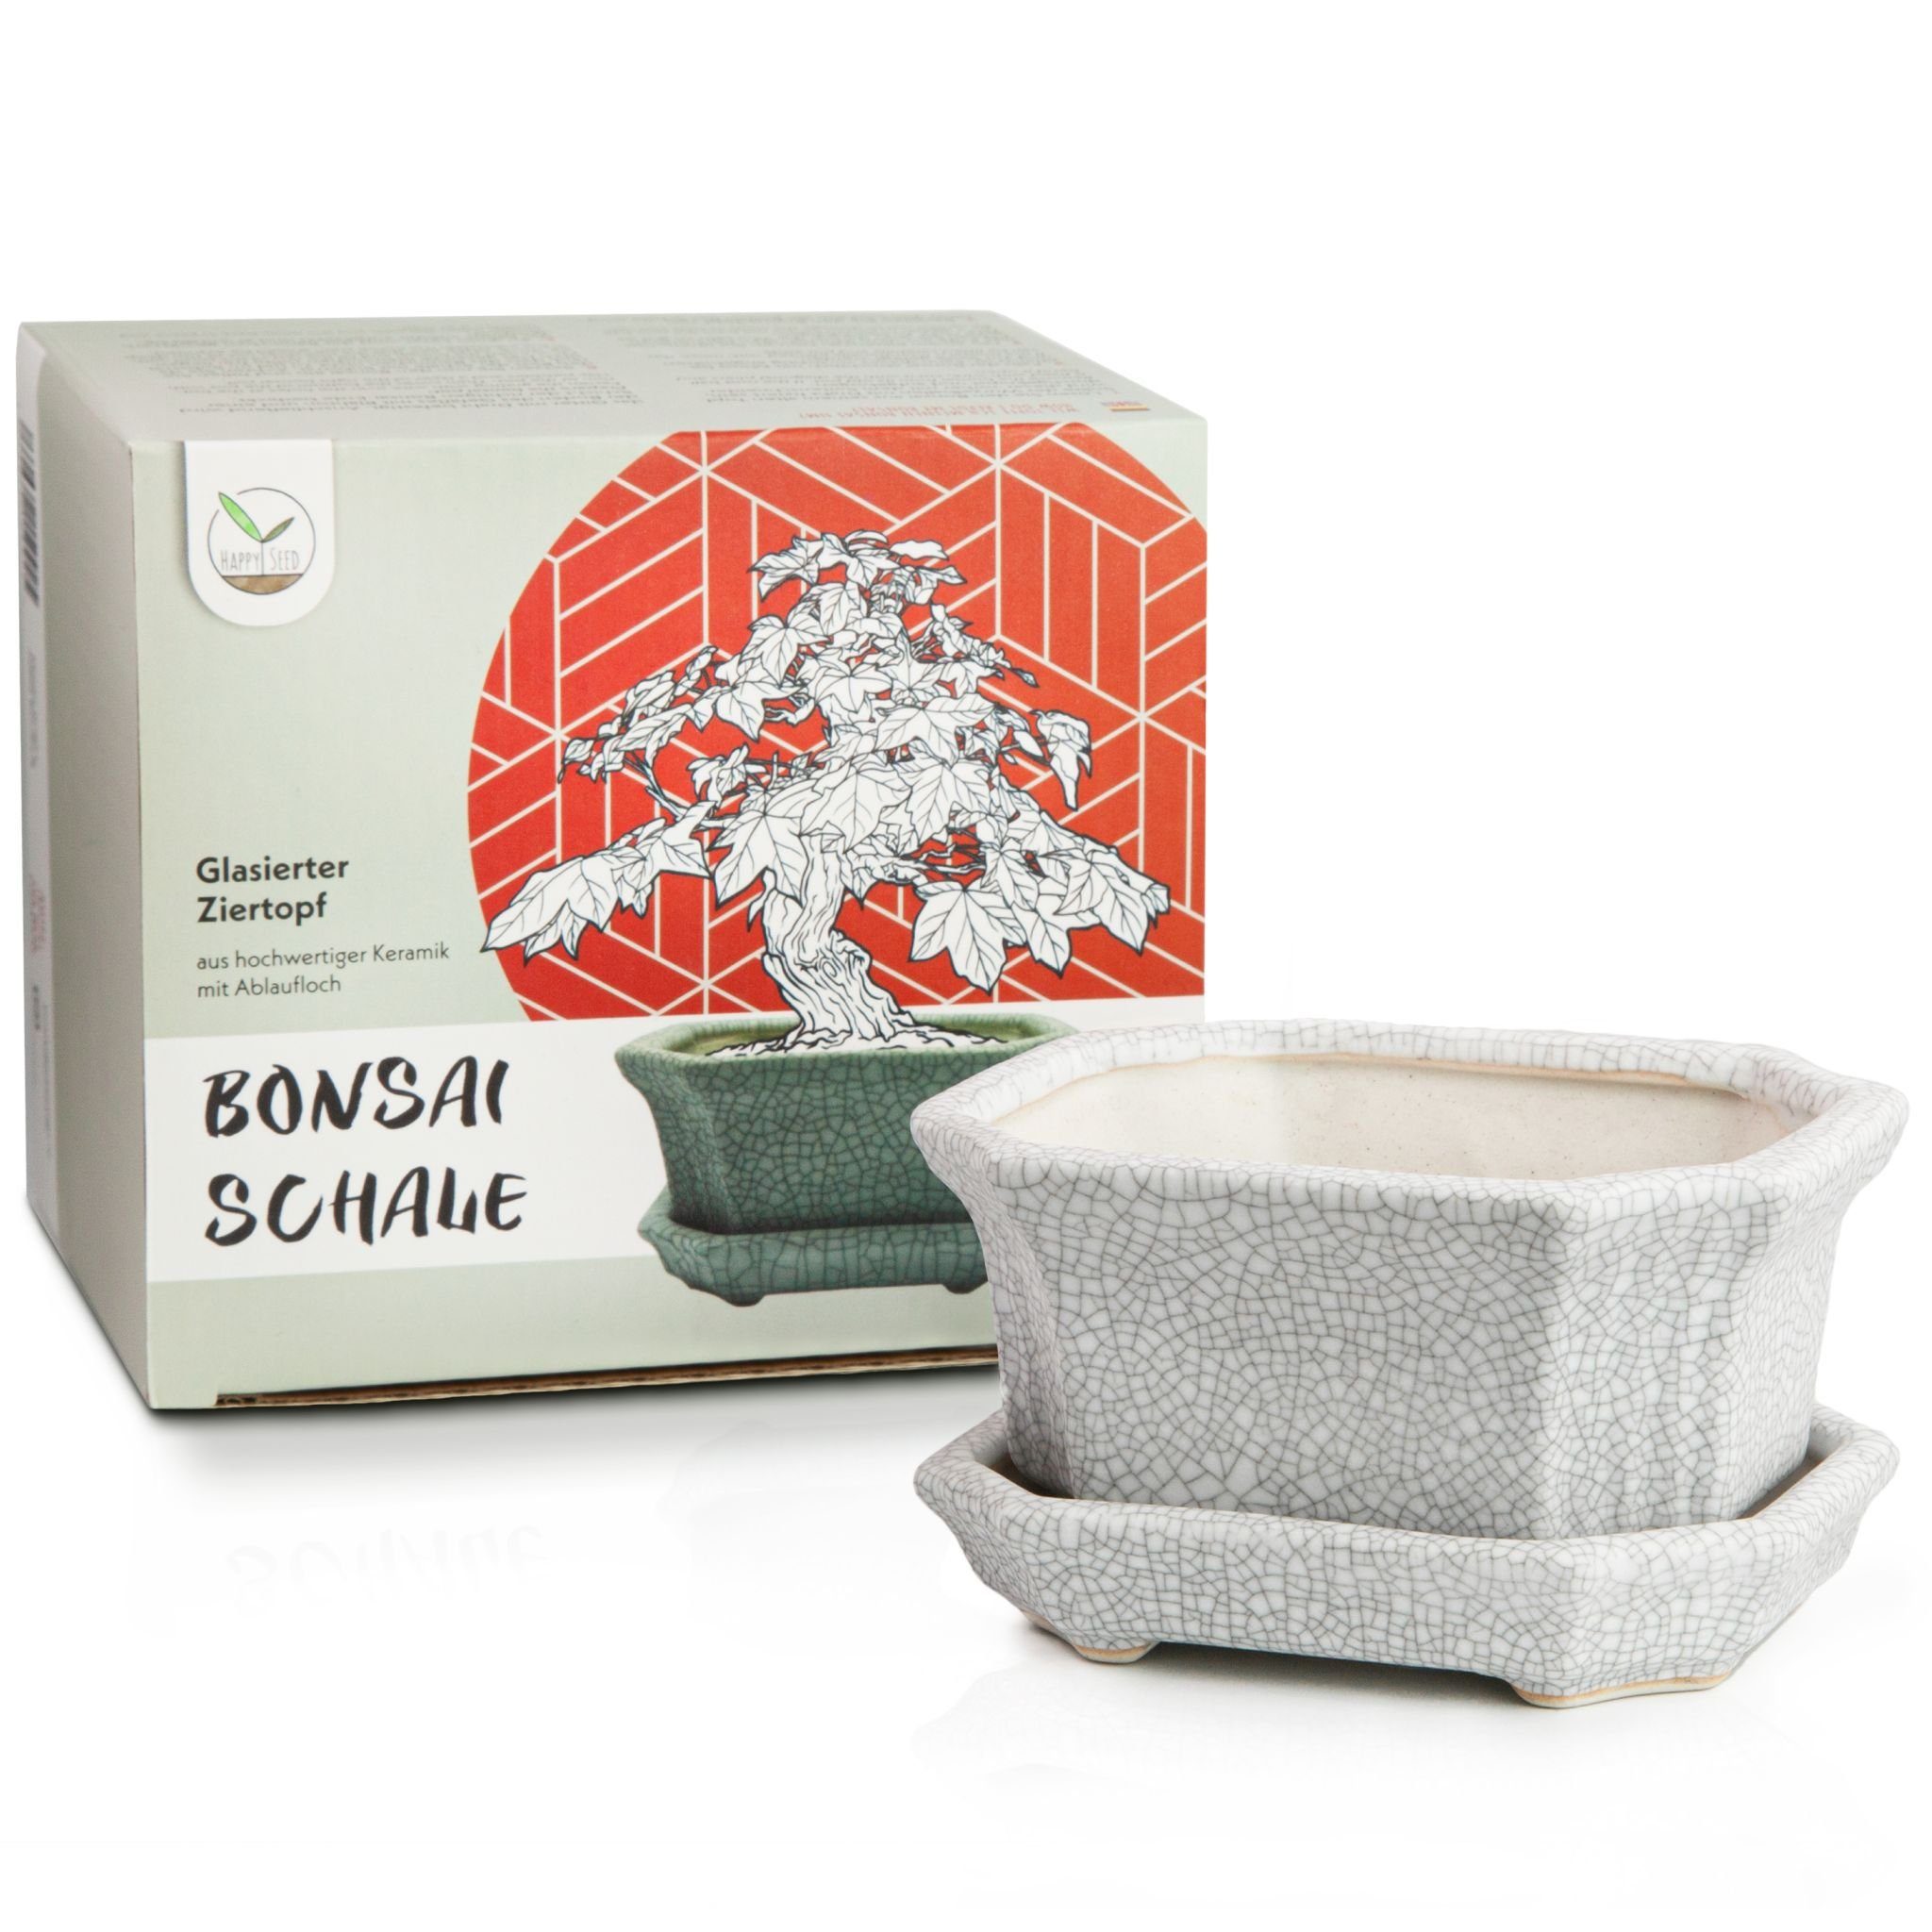 HappySeed Pflanzschale Bonsai Schale aus Keramik mit Untersetzer in Grau - 11 x 6,5 x 9 cm